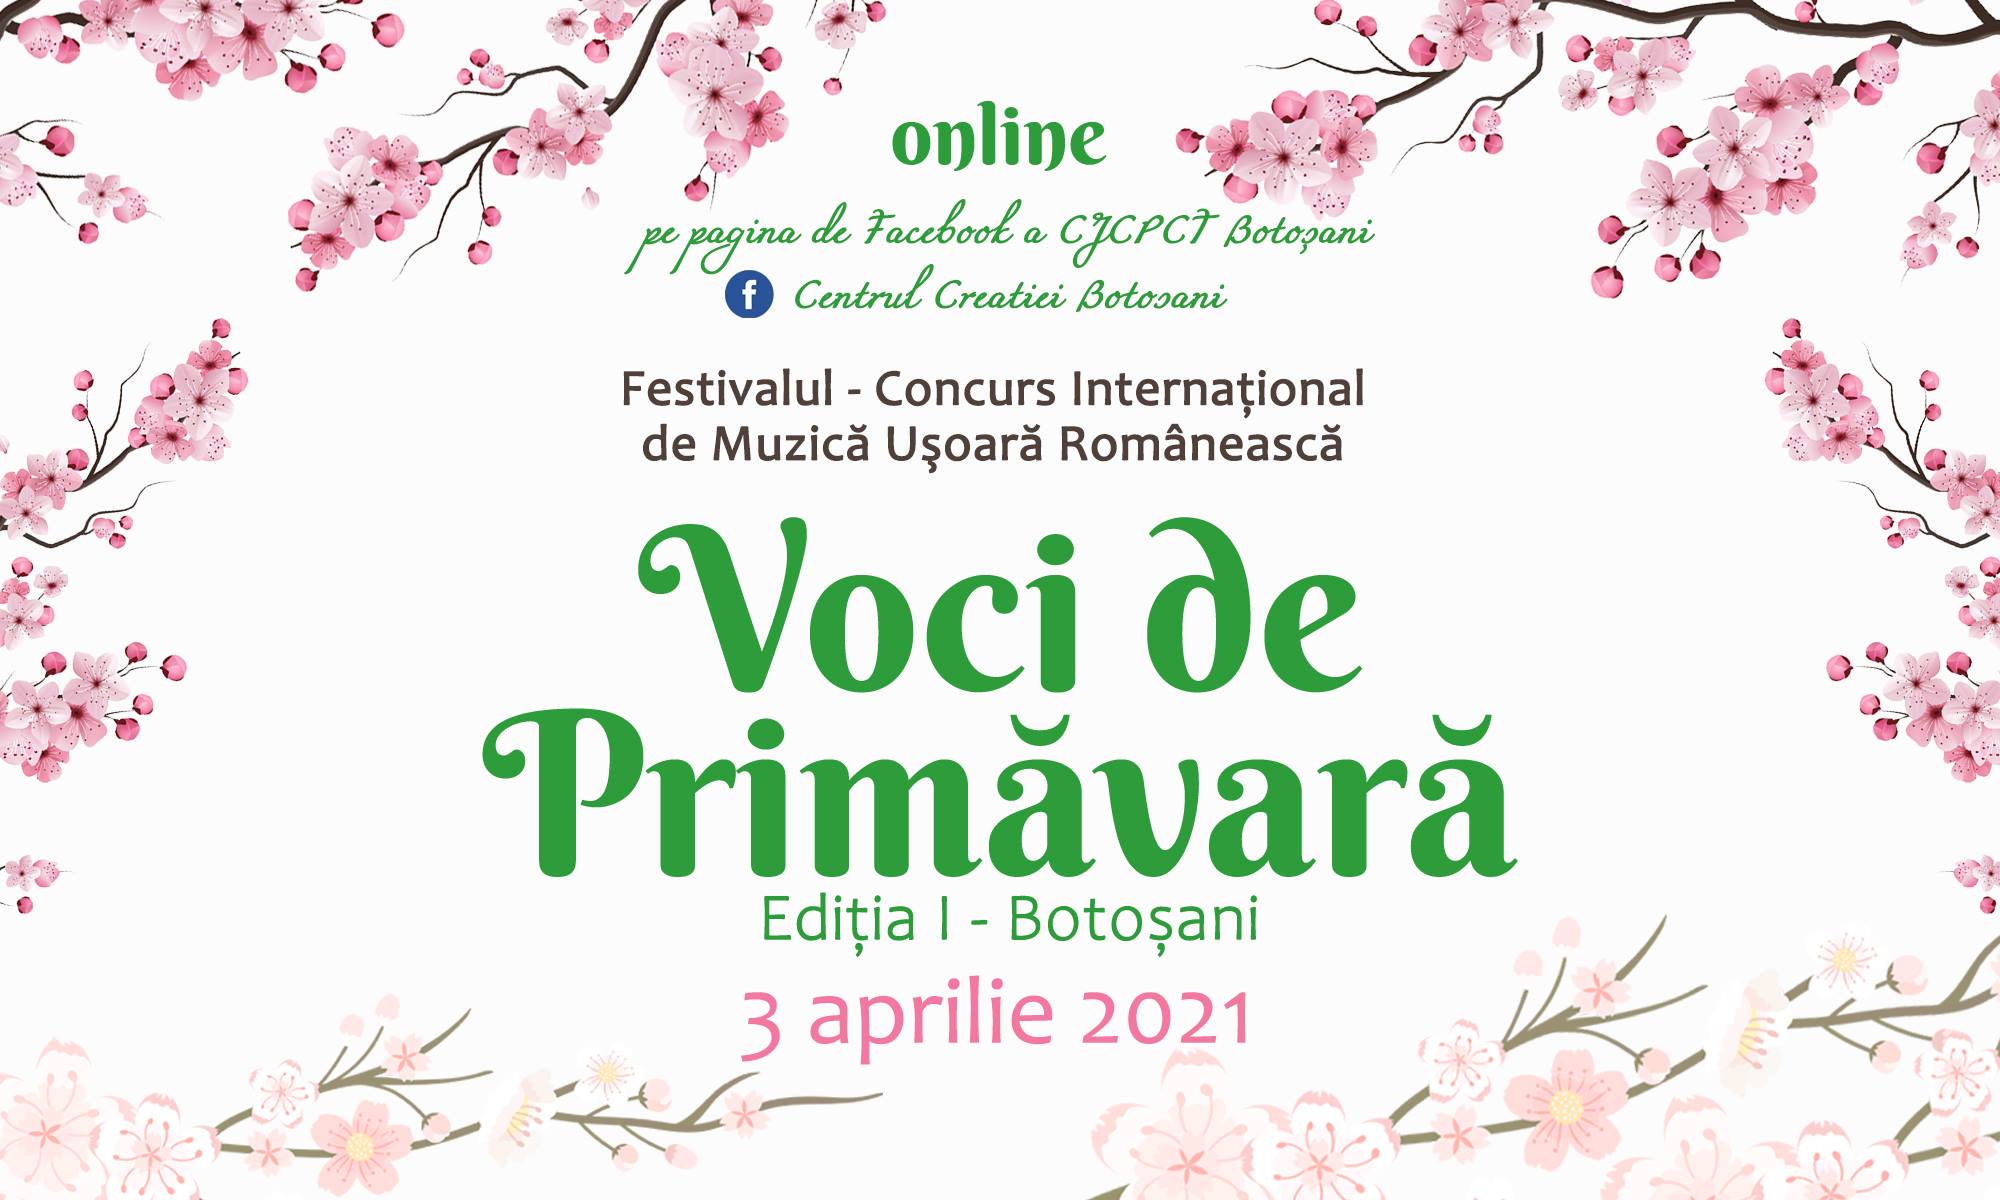 CENTRALIZATOR PREMII ACORDATE – Festivalul – Concurs Internaţional de Muzică Uşoară Românească ,,Voci de Primăvară”, Ediţia I, Botoșani, 3 aprilie 2021